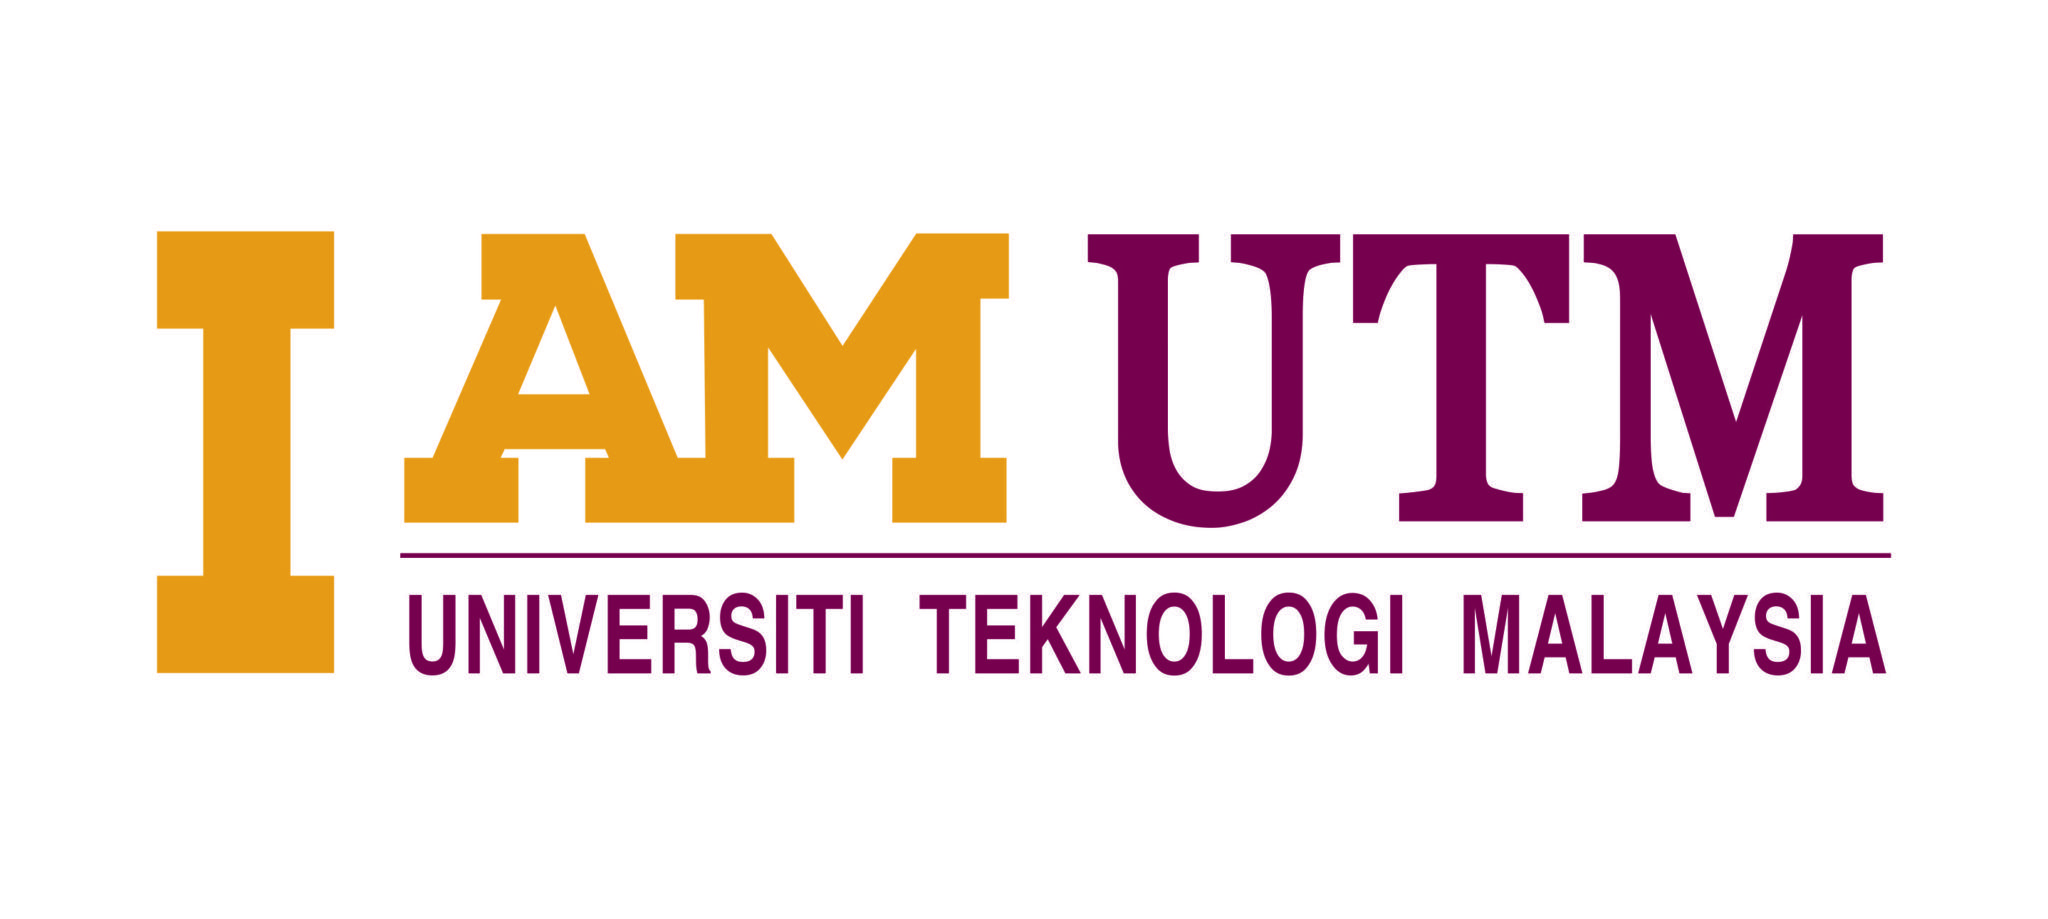 UTM Logo - I am UTM | UTM Brand